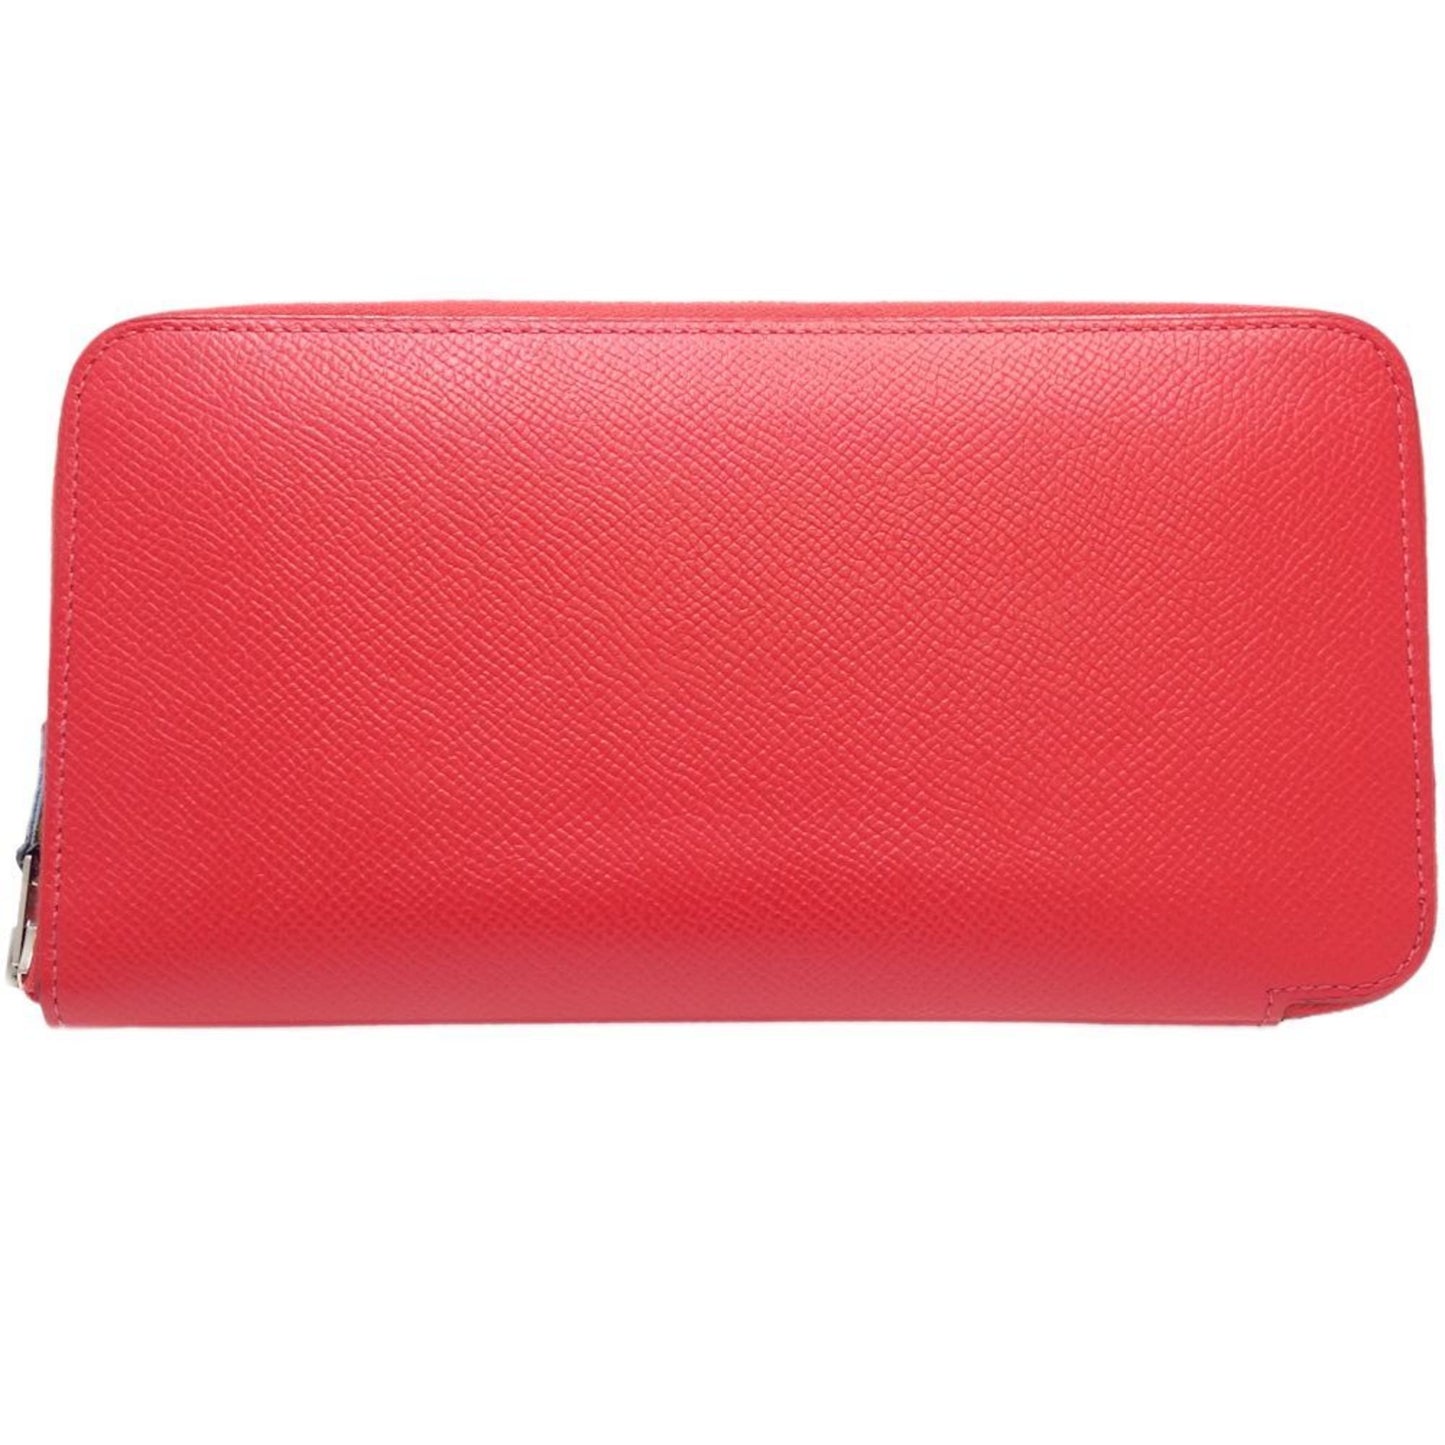 Hermes Women's Elegant Red Bi-Fold Wallet in Epsom Leather in Red